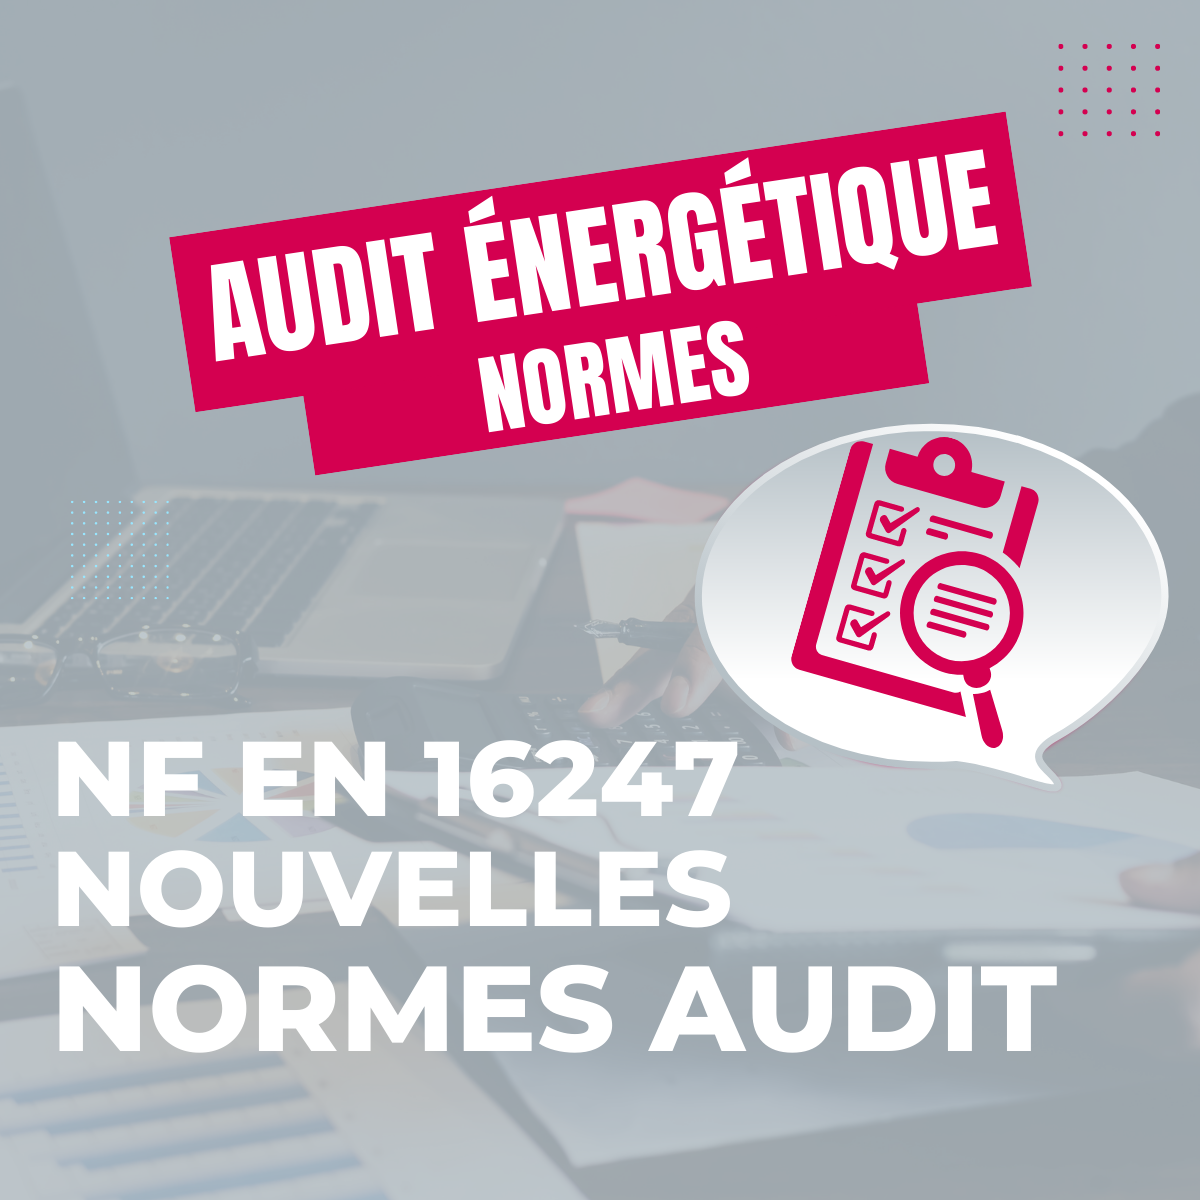 Focus sur les nouvelles normes audit énergétique NF EN 16247